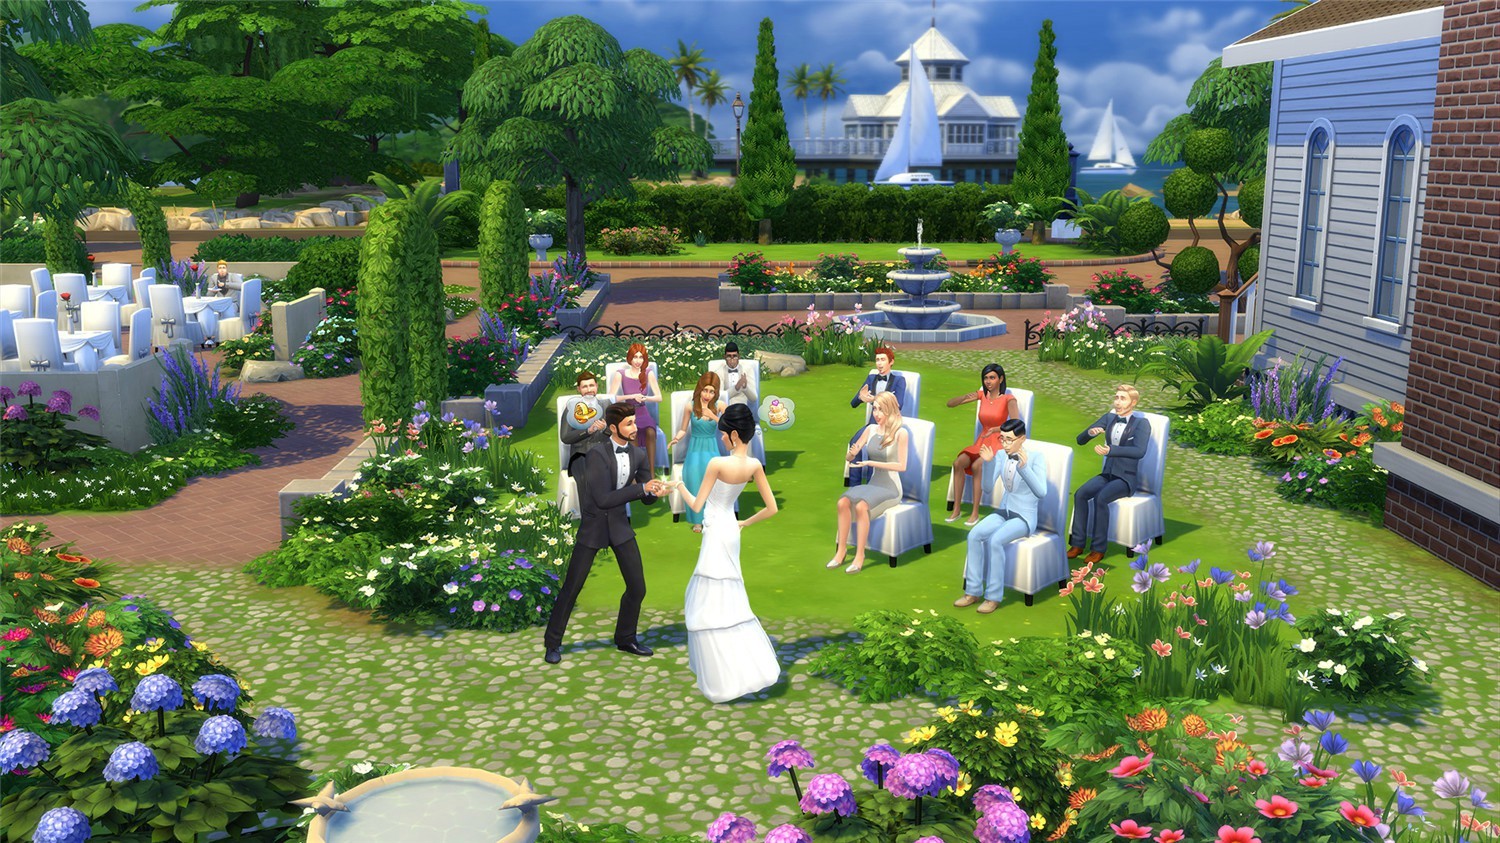 模拟人生4豪华版/The Sims 4 Deluxe Edition插图9